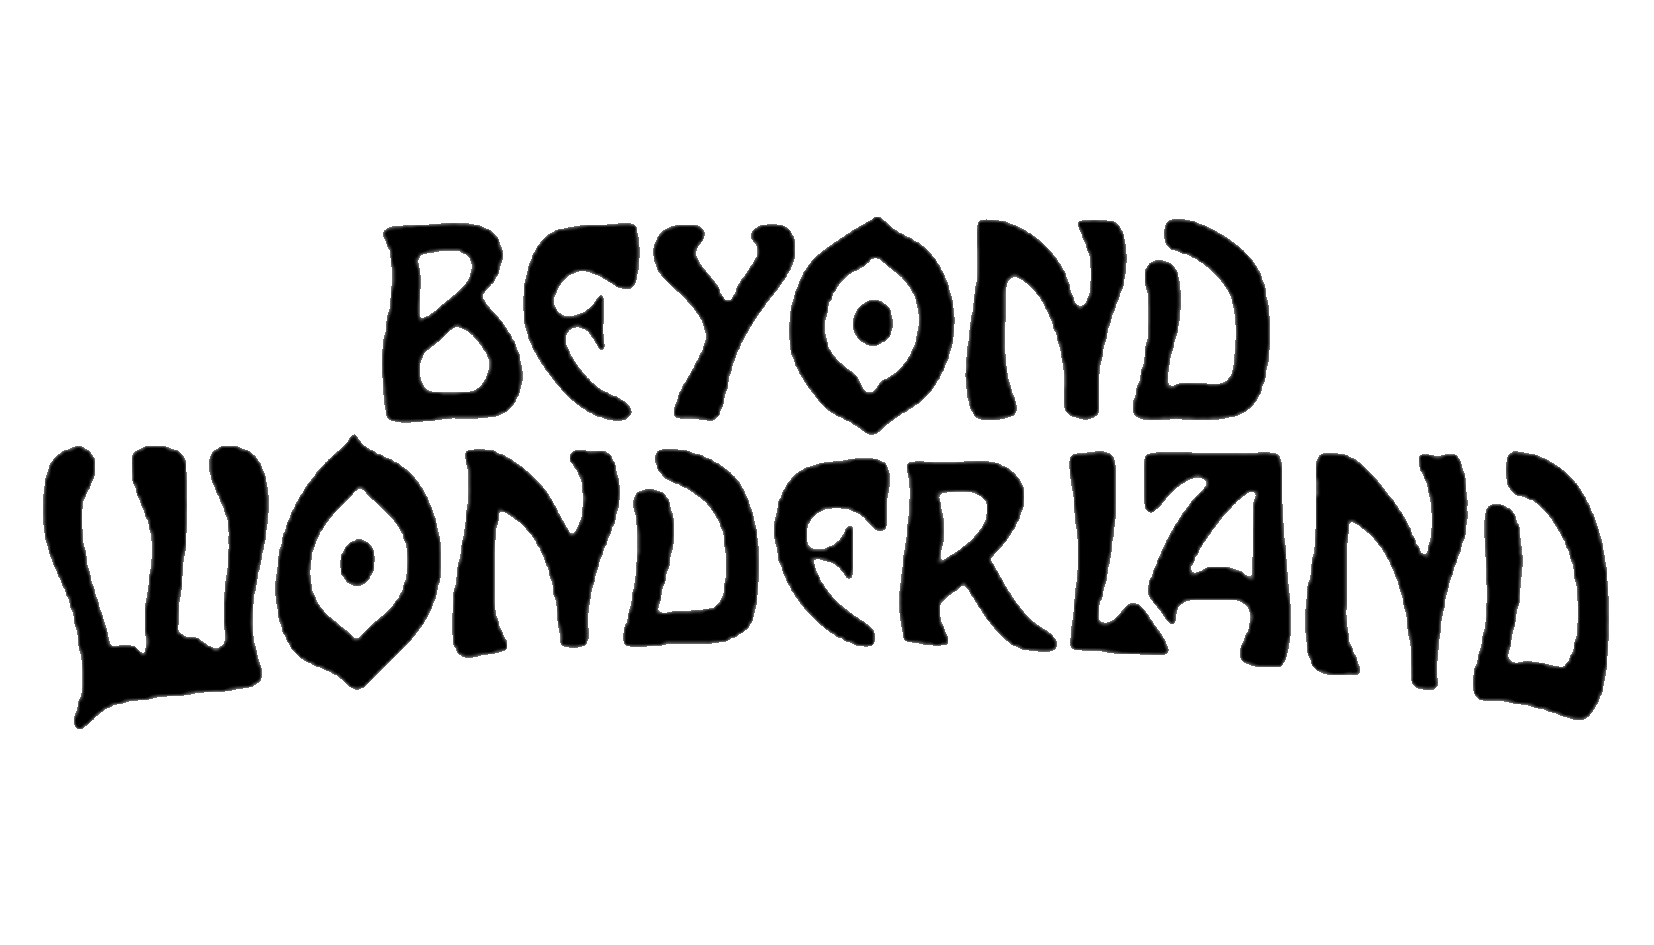 1er logo Benyond